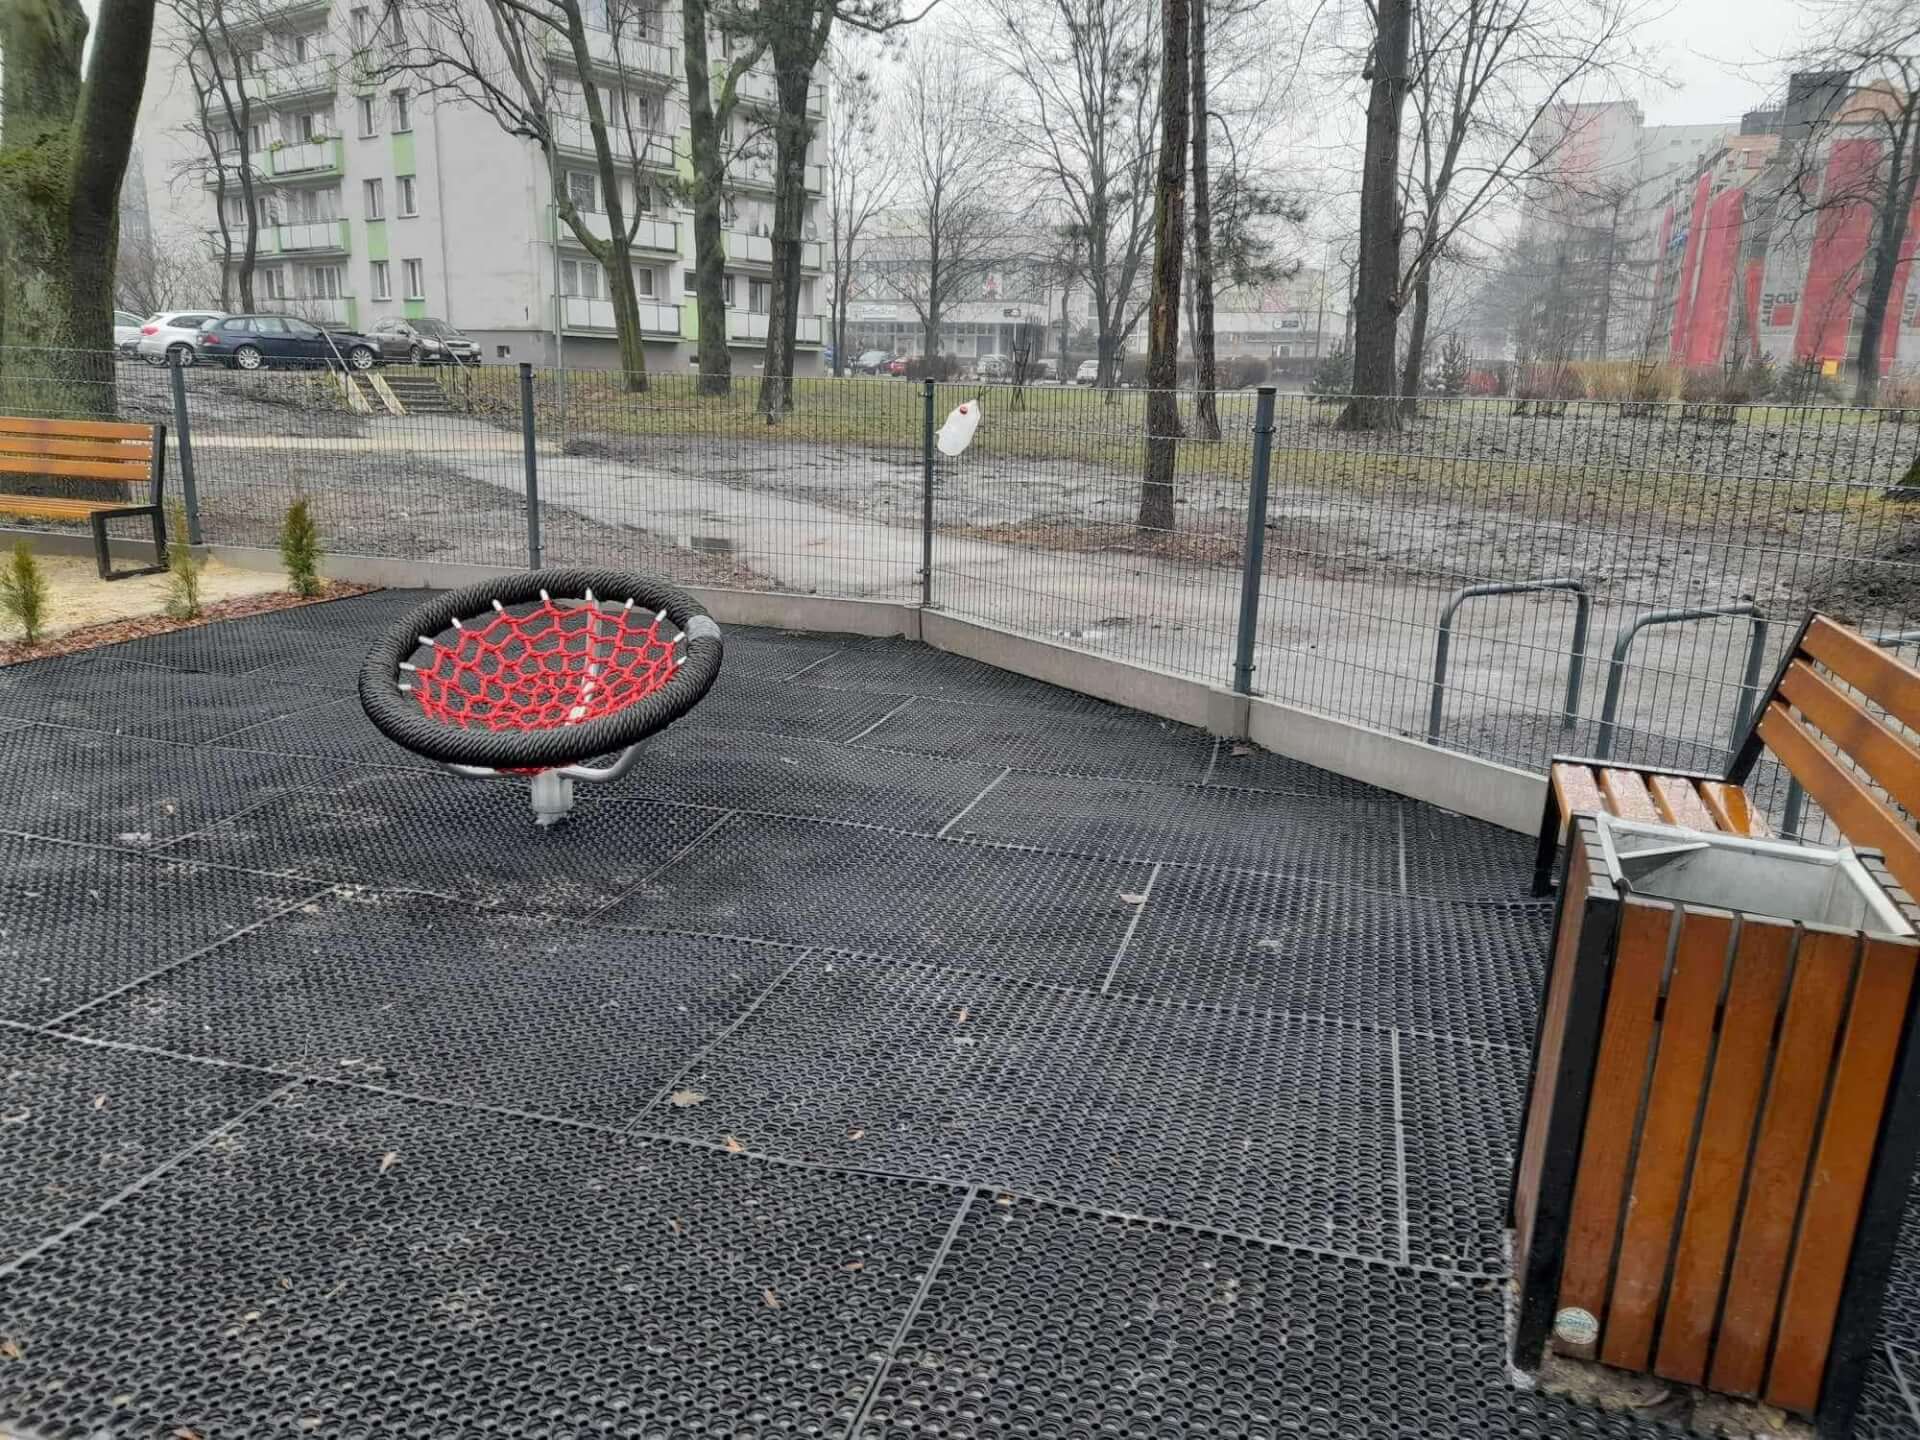 Plac zabaw przy ulicy Legionów został rozbudowany